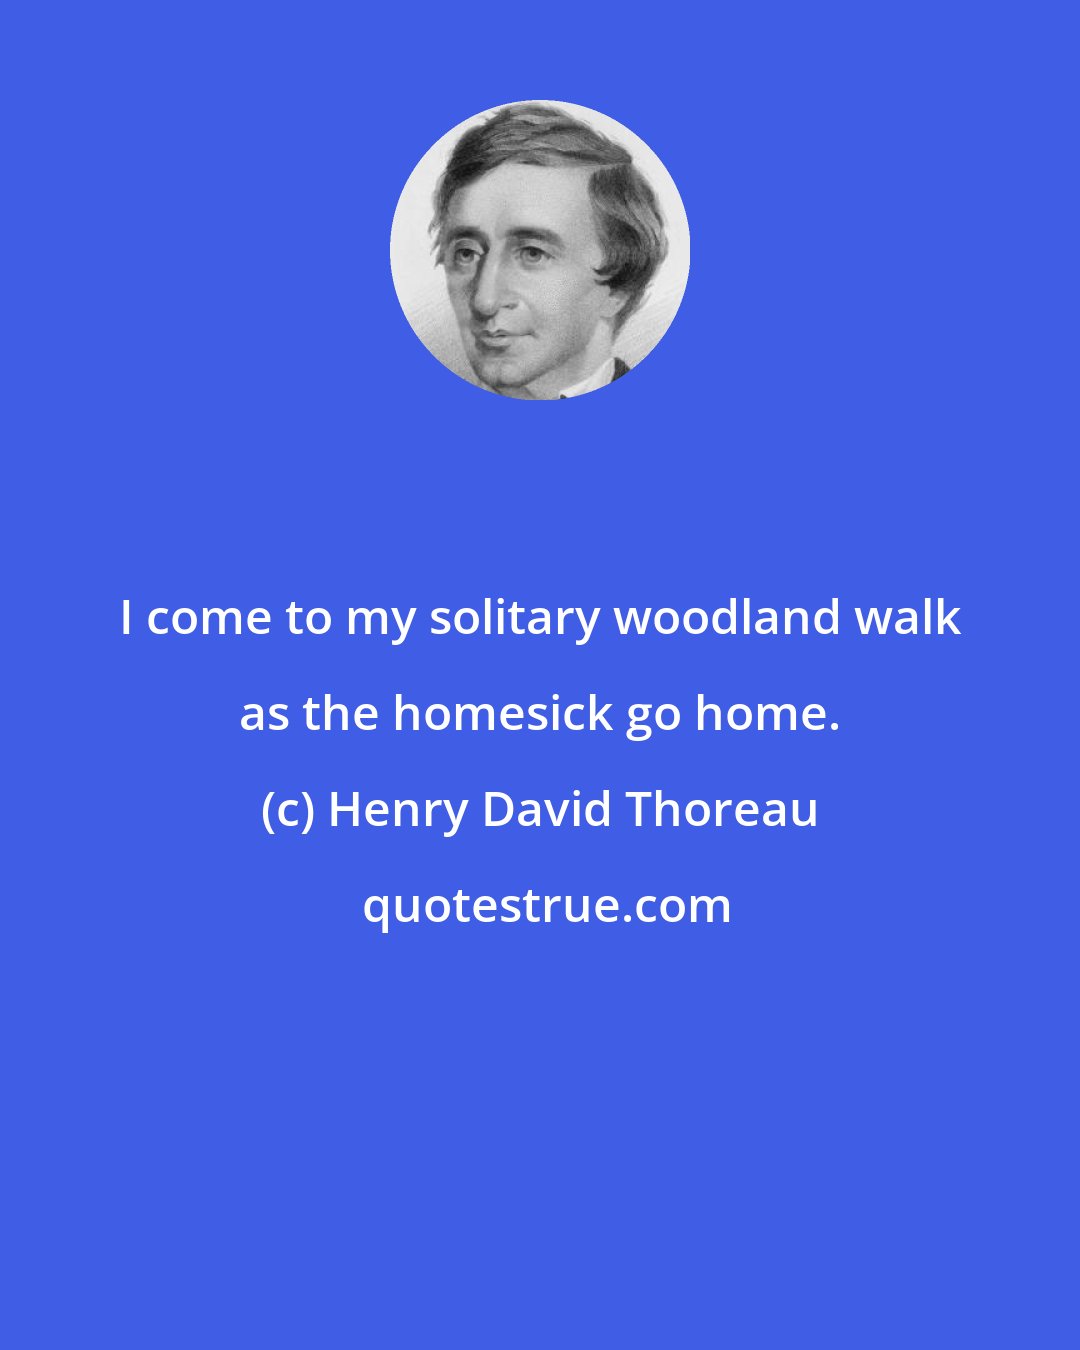 Henry David Thoreau: I come to my solitary woodland walk as the homesick go home.